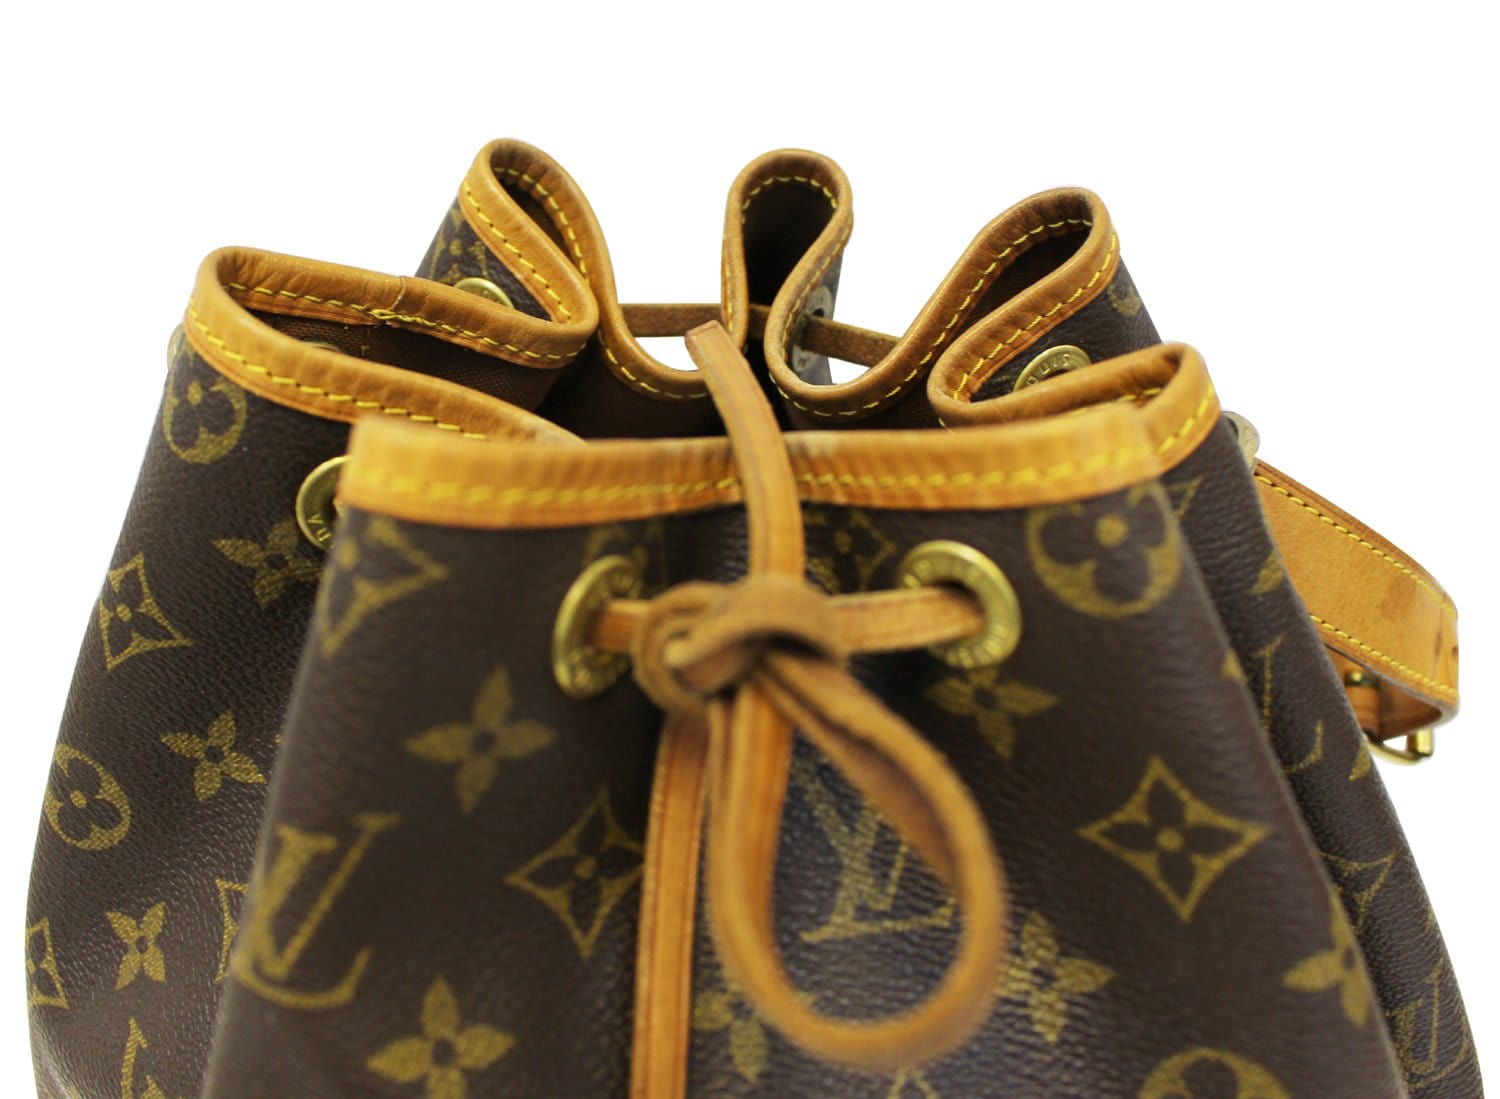 LOUIS VUITTON Louis * Vuitton monogram noe pouch shoulder bag 2608281091:  Real Yahoo auction salling